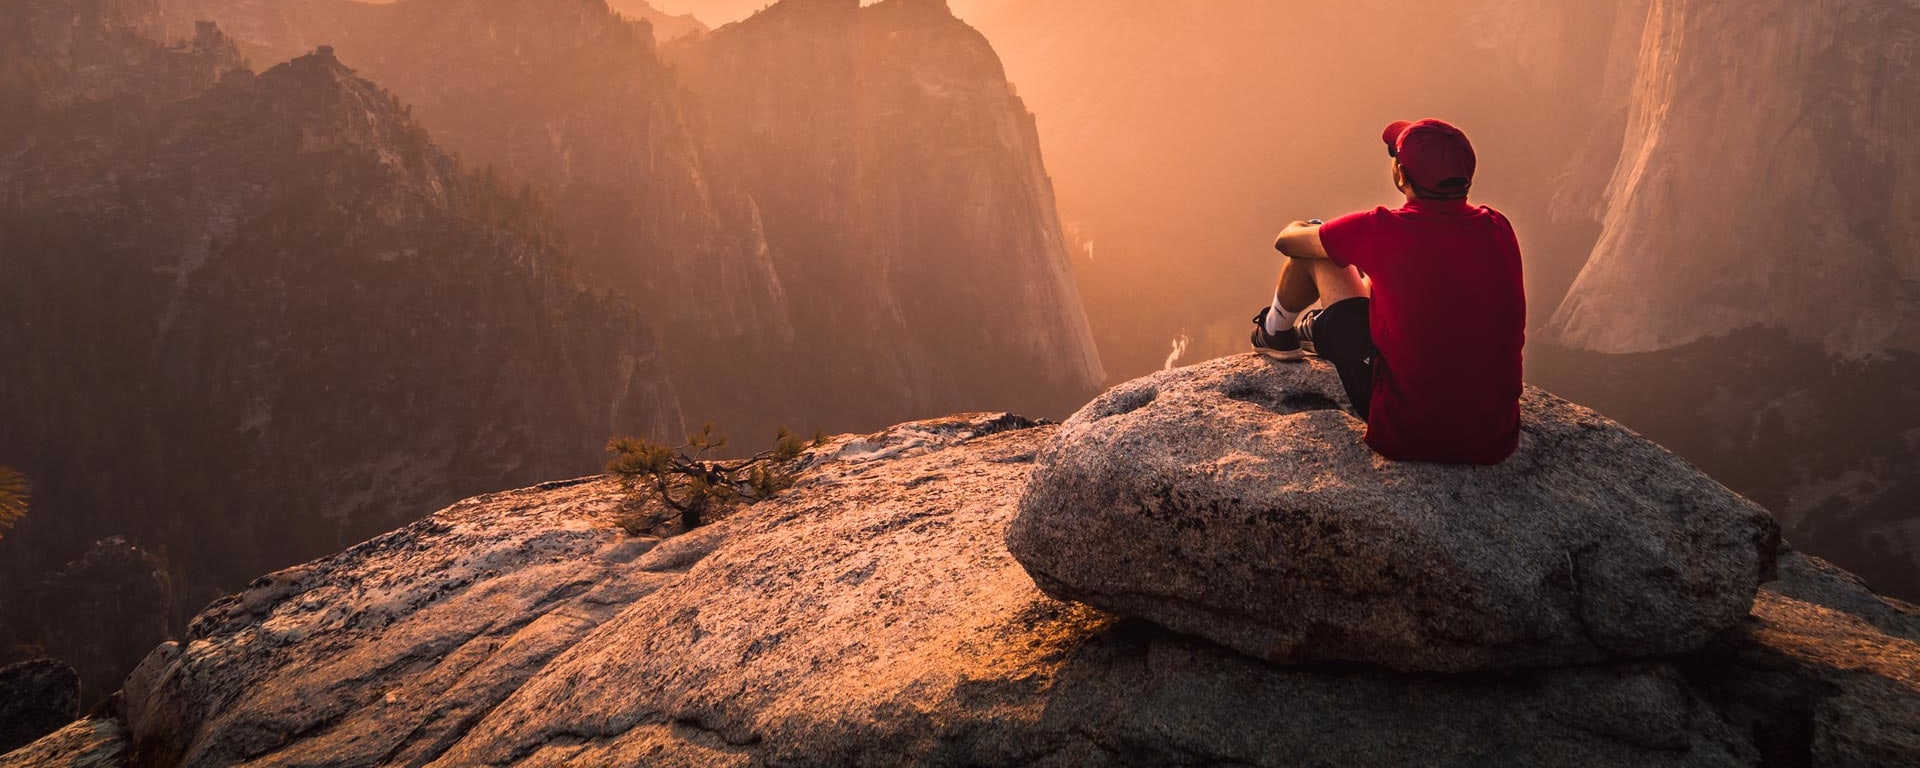 Un homme avec une casquette rouge est assis sur un promontoire rocheux et regarde le coucher de soleil.